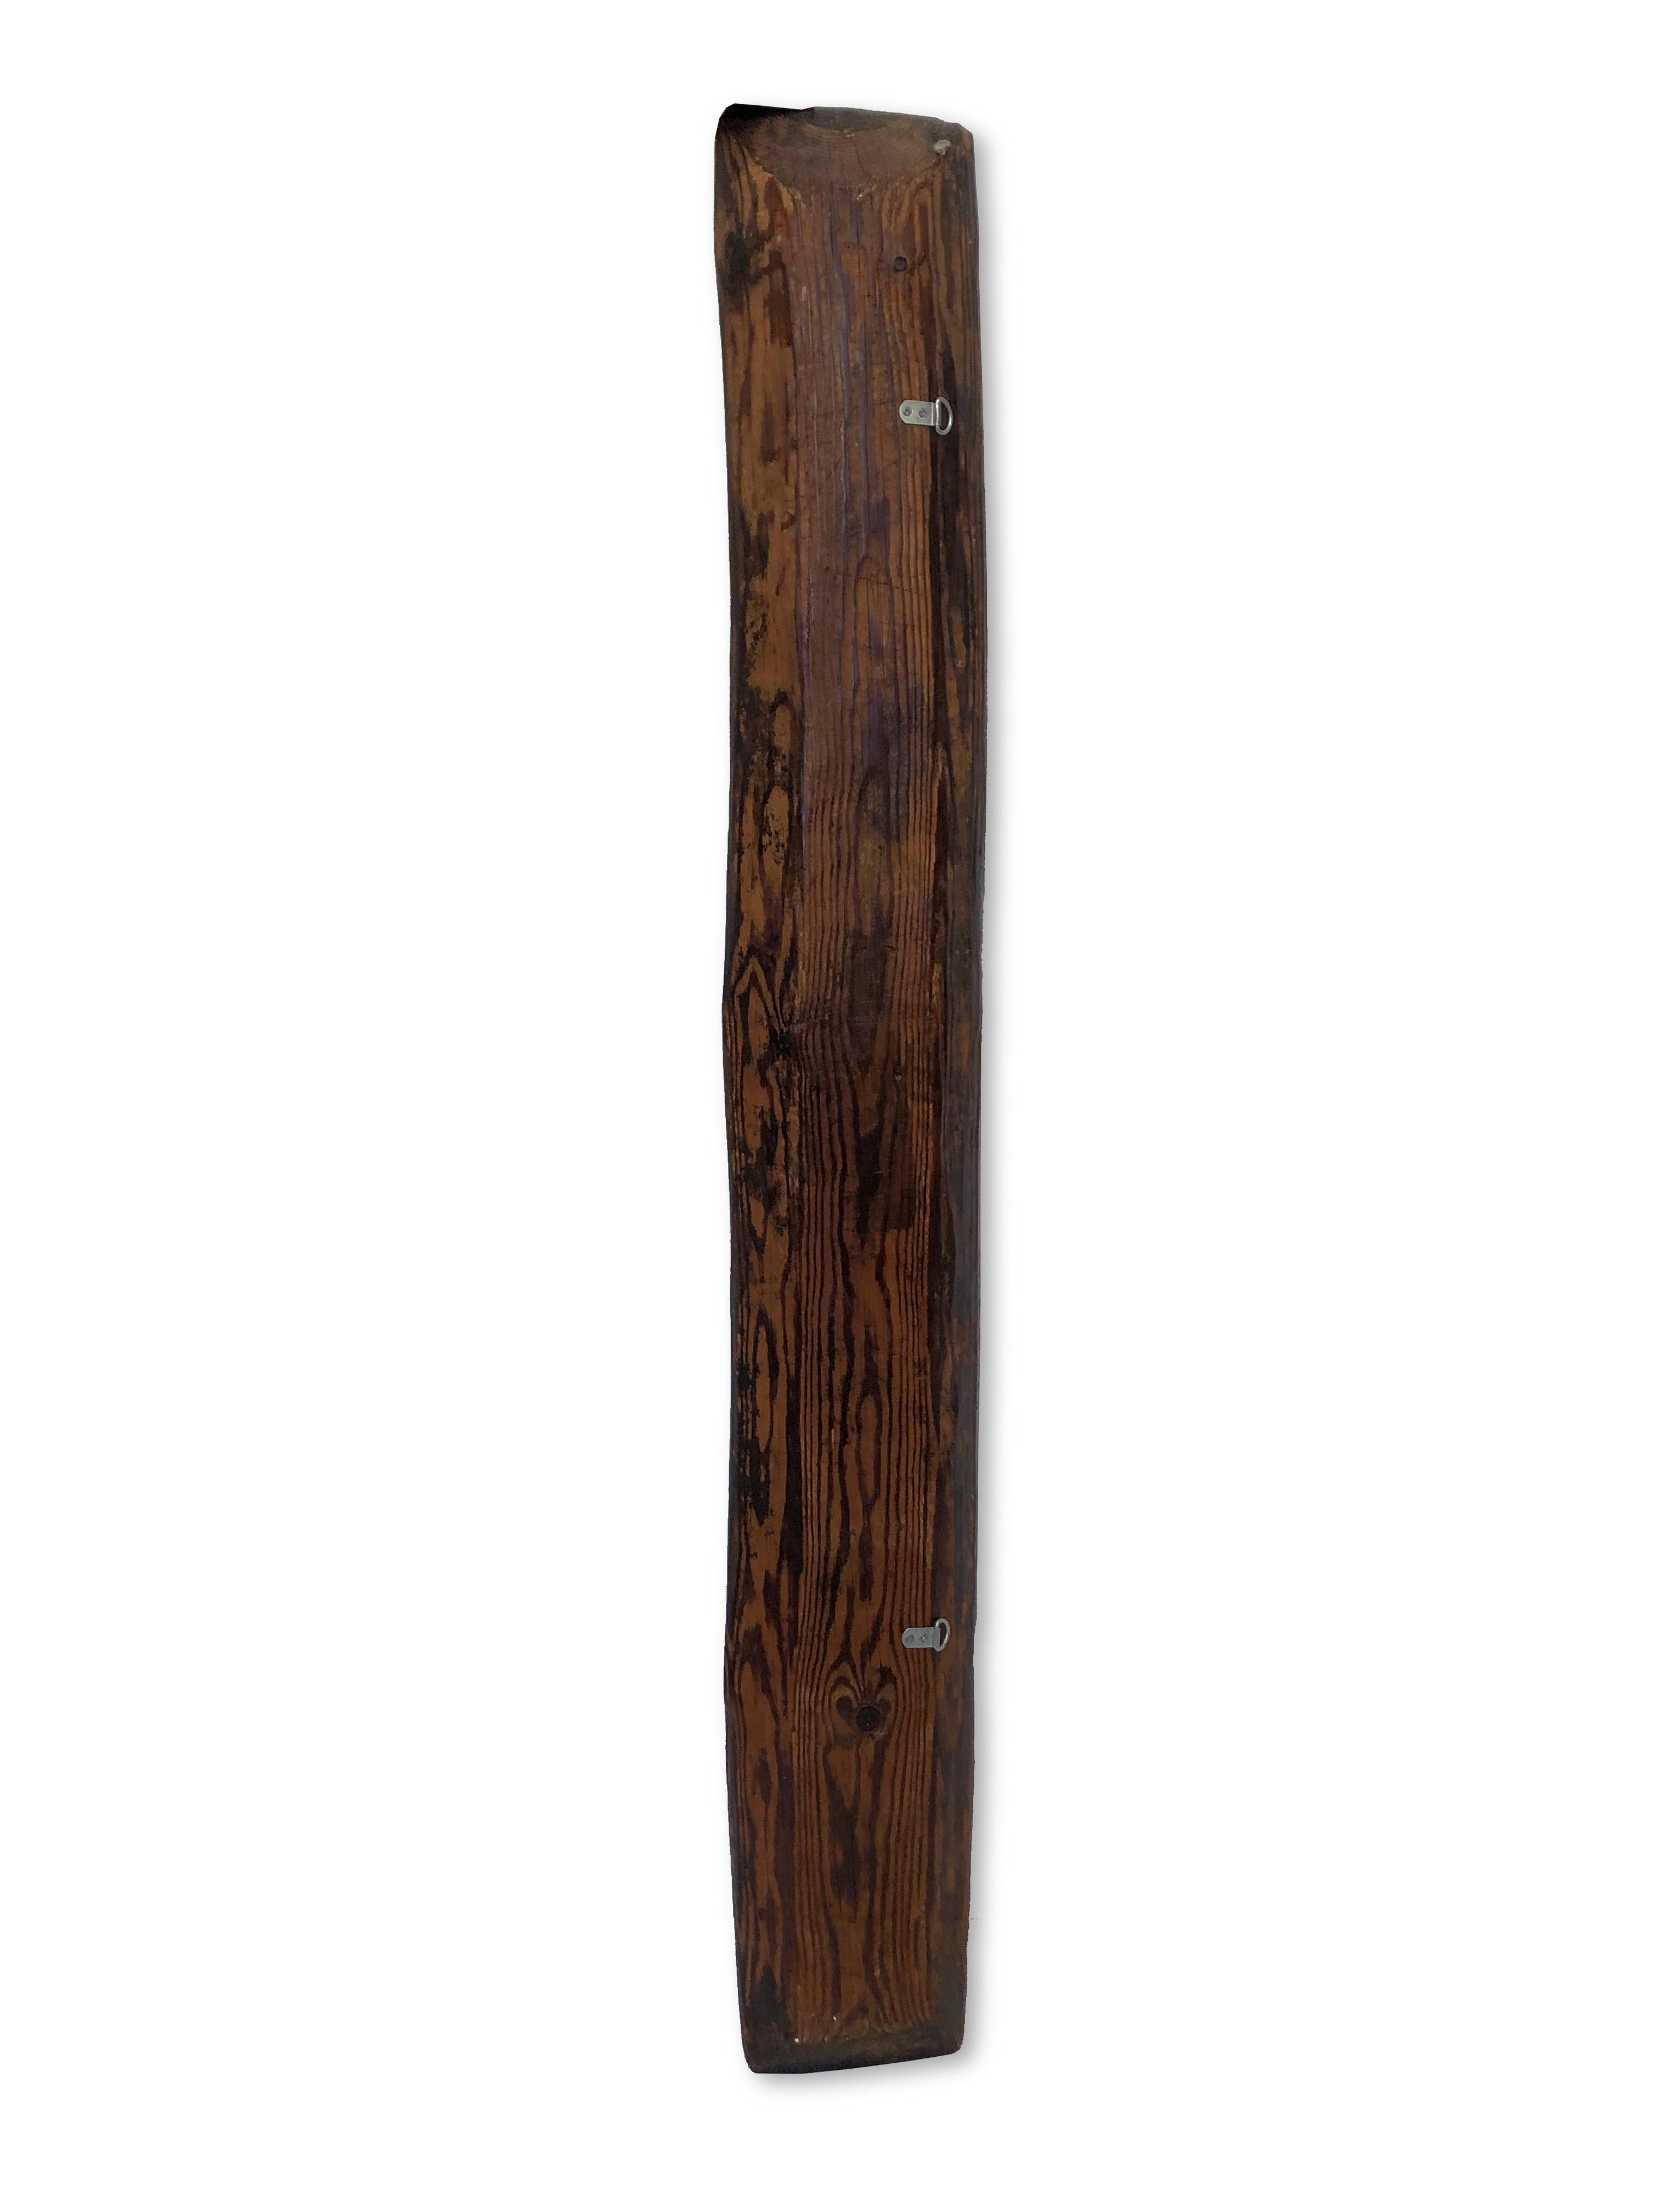 Handgeschnitzter Teigaufleger aus Holz, um 1900. Dieser rustikale Teigträger in Form eines schmalen, in acht Abschnitte unterteilten Troges wurde früher verwendet, um den Teig während des Gärens aufzubewahren. Sein handgeschnitztes Design sorgt für